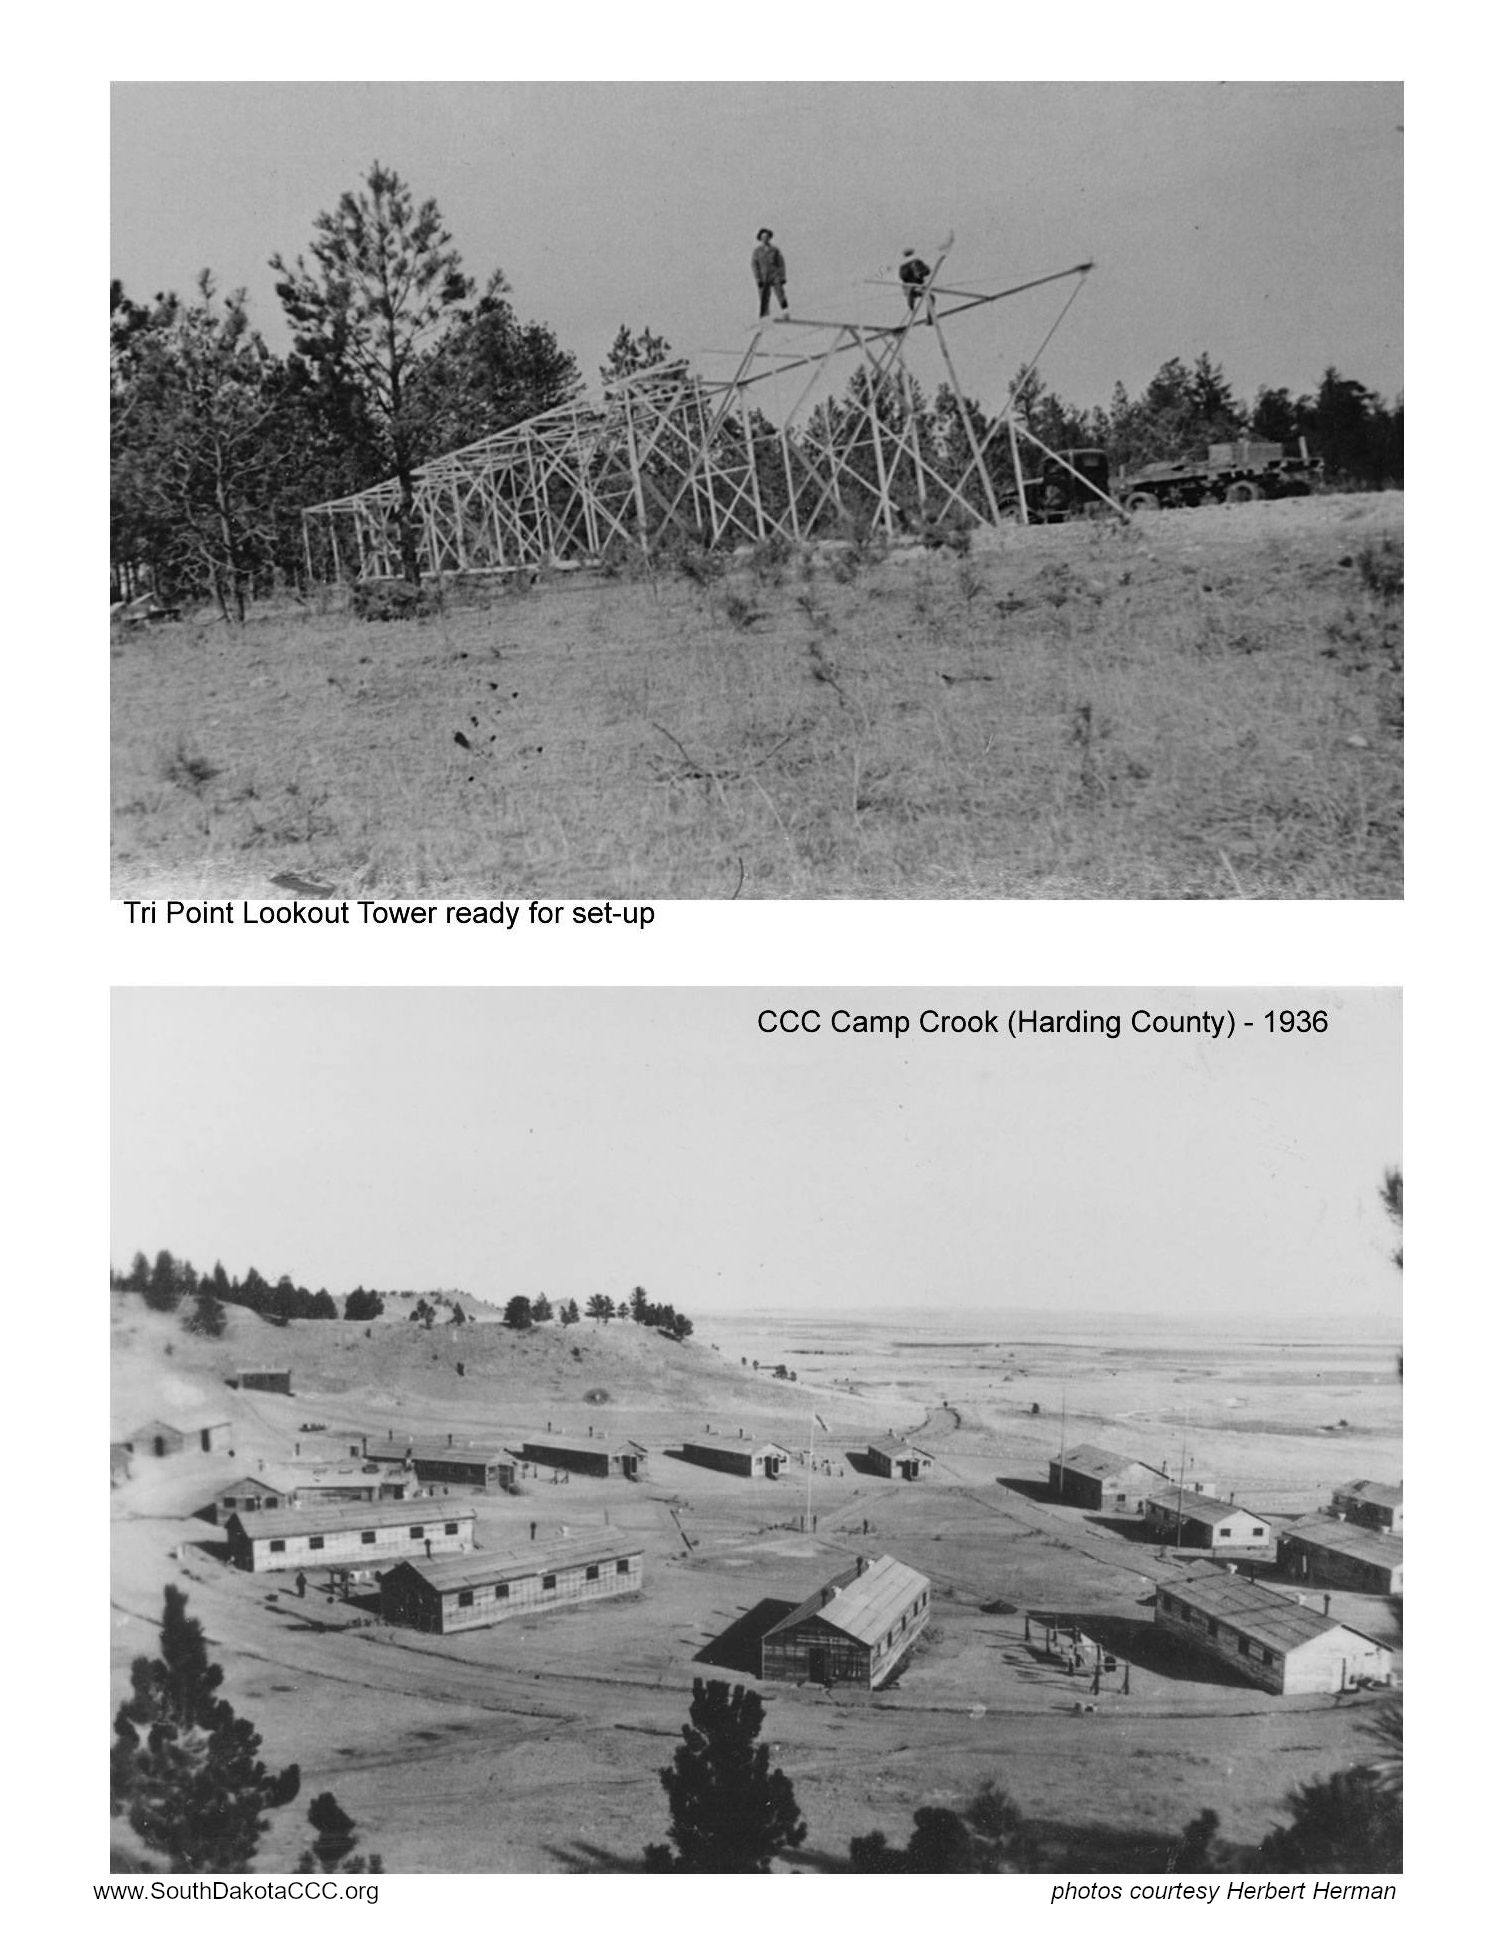 CCC Camp Crook photos from Herbert Herman